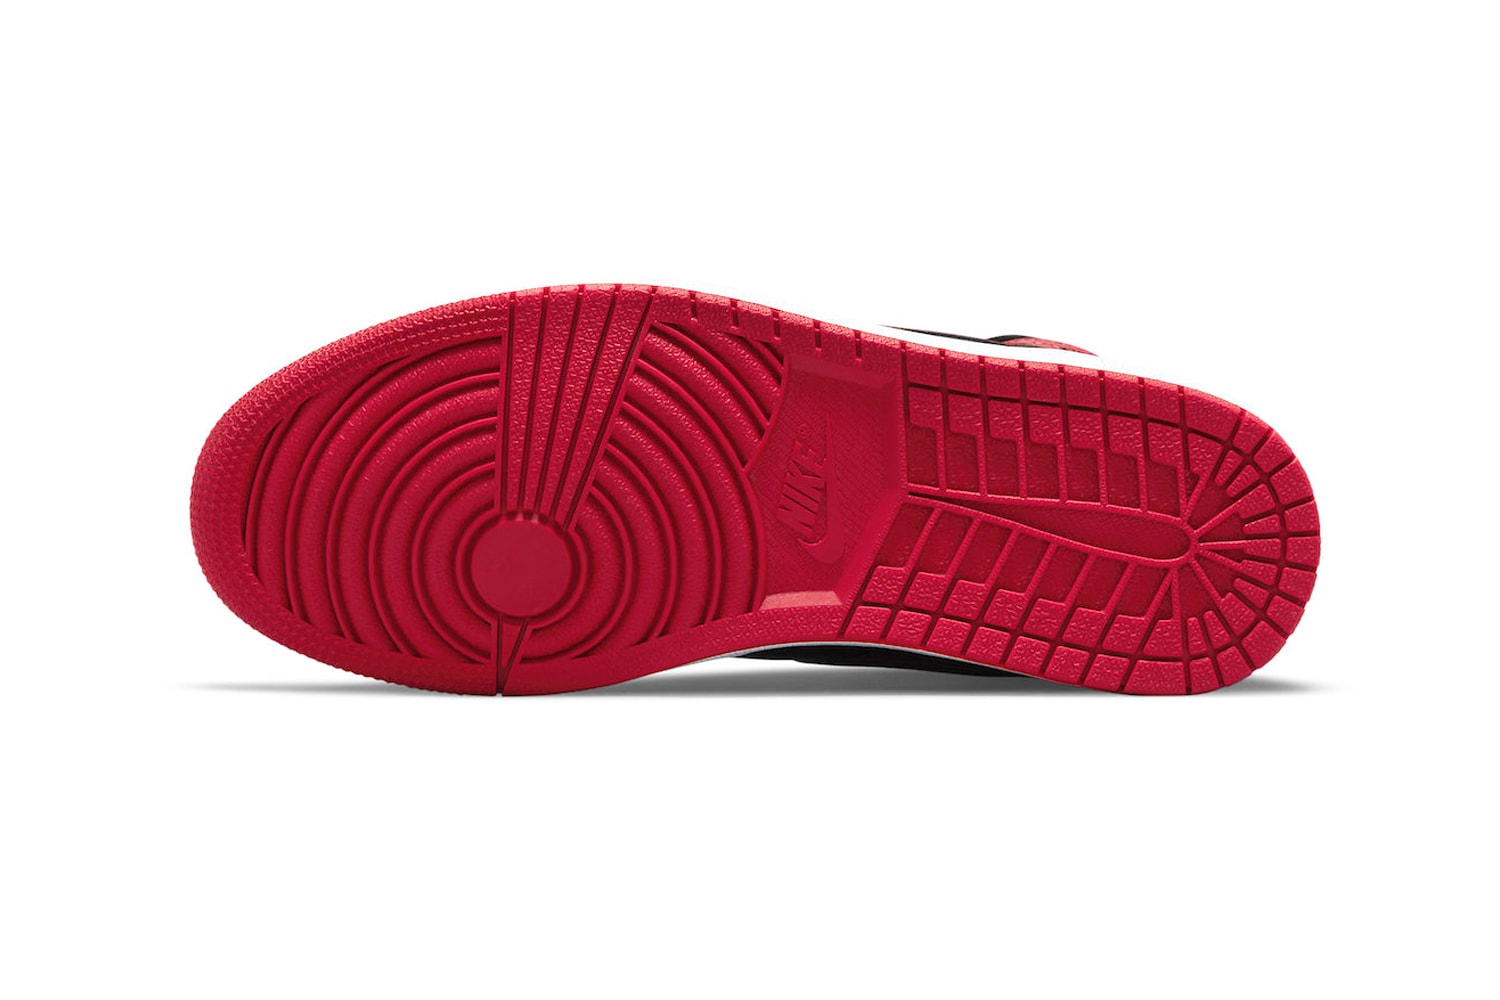 エアジョーダン 1 ハイ OG “パテント ブレッド” の公式ビジュアルが公開 Air Jordan 1 High OG Bred Patent Official Look Release Info 555088-063 Date Buy Price Black White Varsity Red